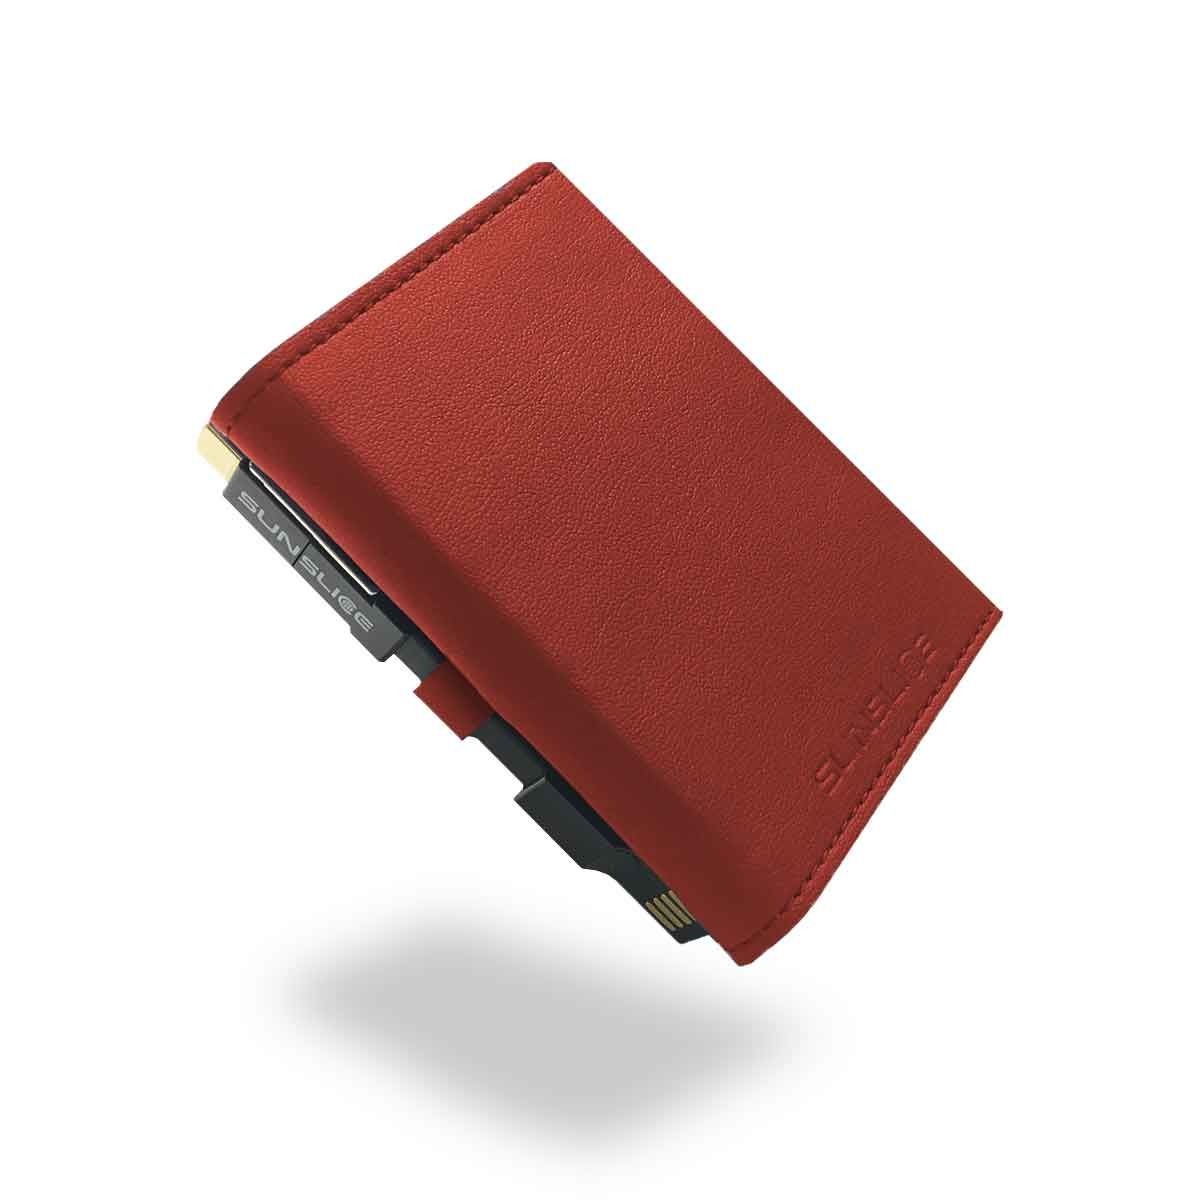 Batterie solaire portable Sunslice Photon - 4000 mAh - Rouge